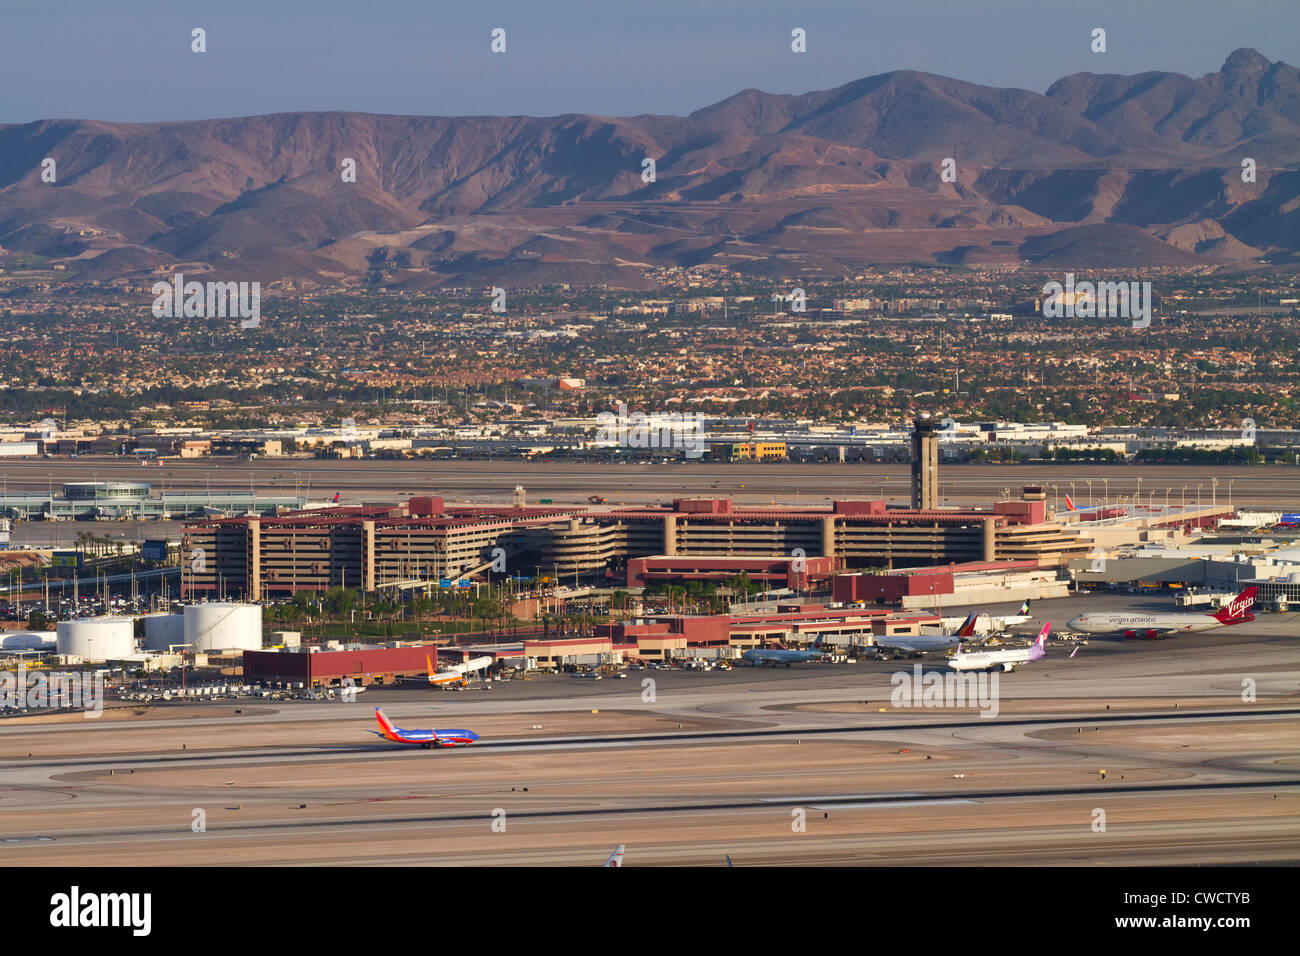 El Aeropuerto Internacional McCarran de Las Vegas, Nevada. Foto de stock